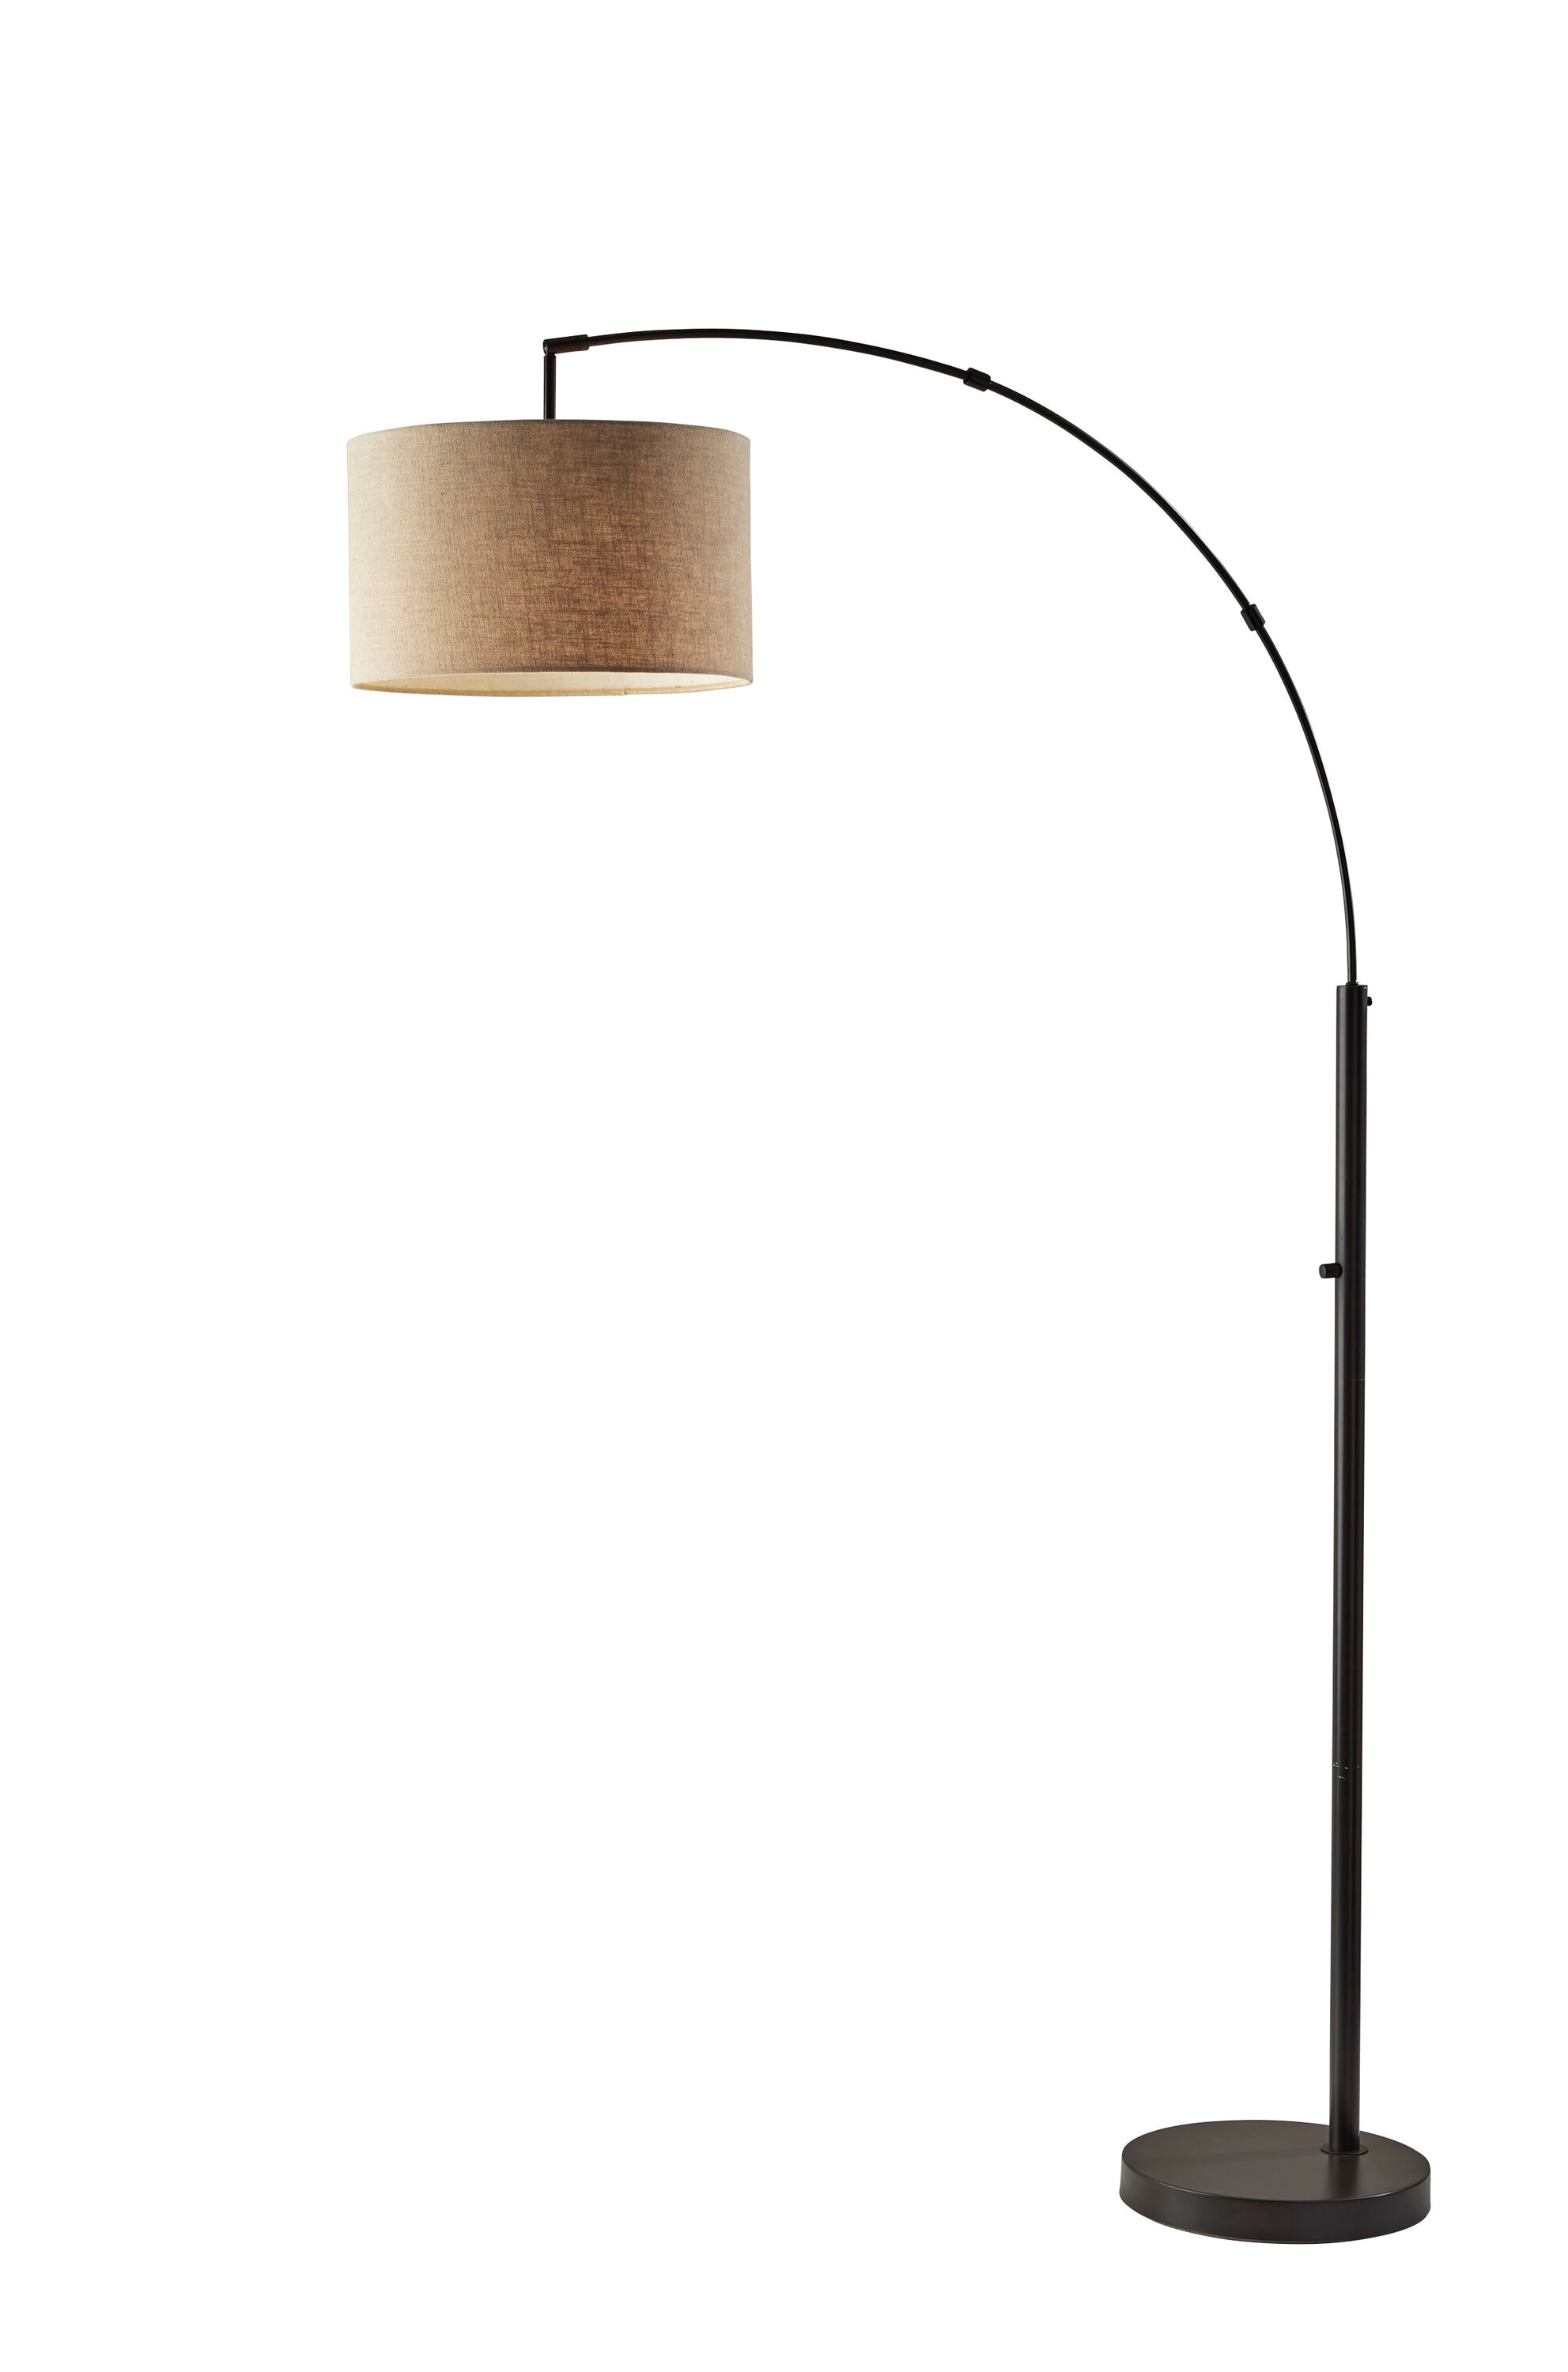 Adesso Preston 76-in Dark Bronze Arc Floor Lamp in the Floor Lamps 